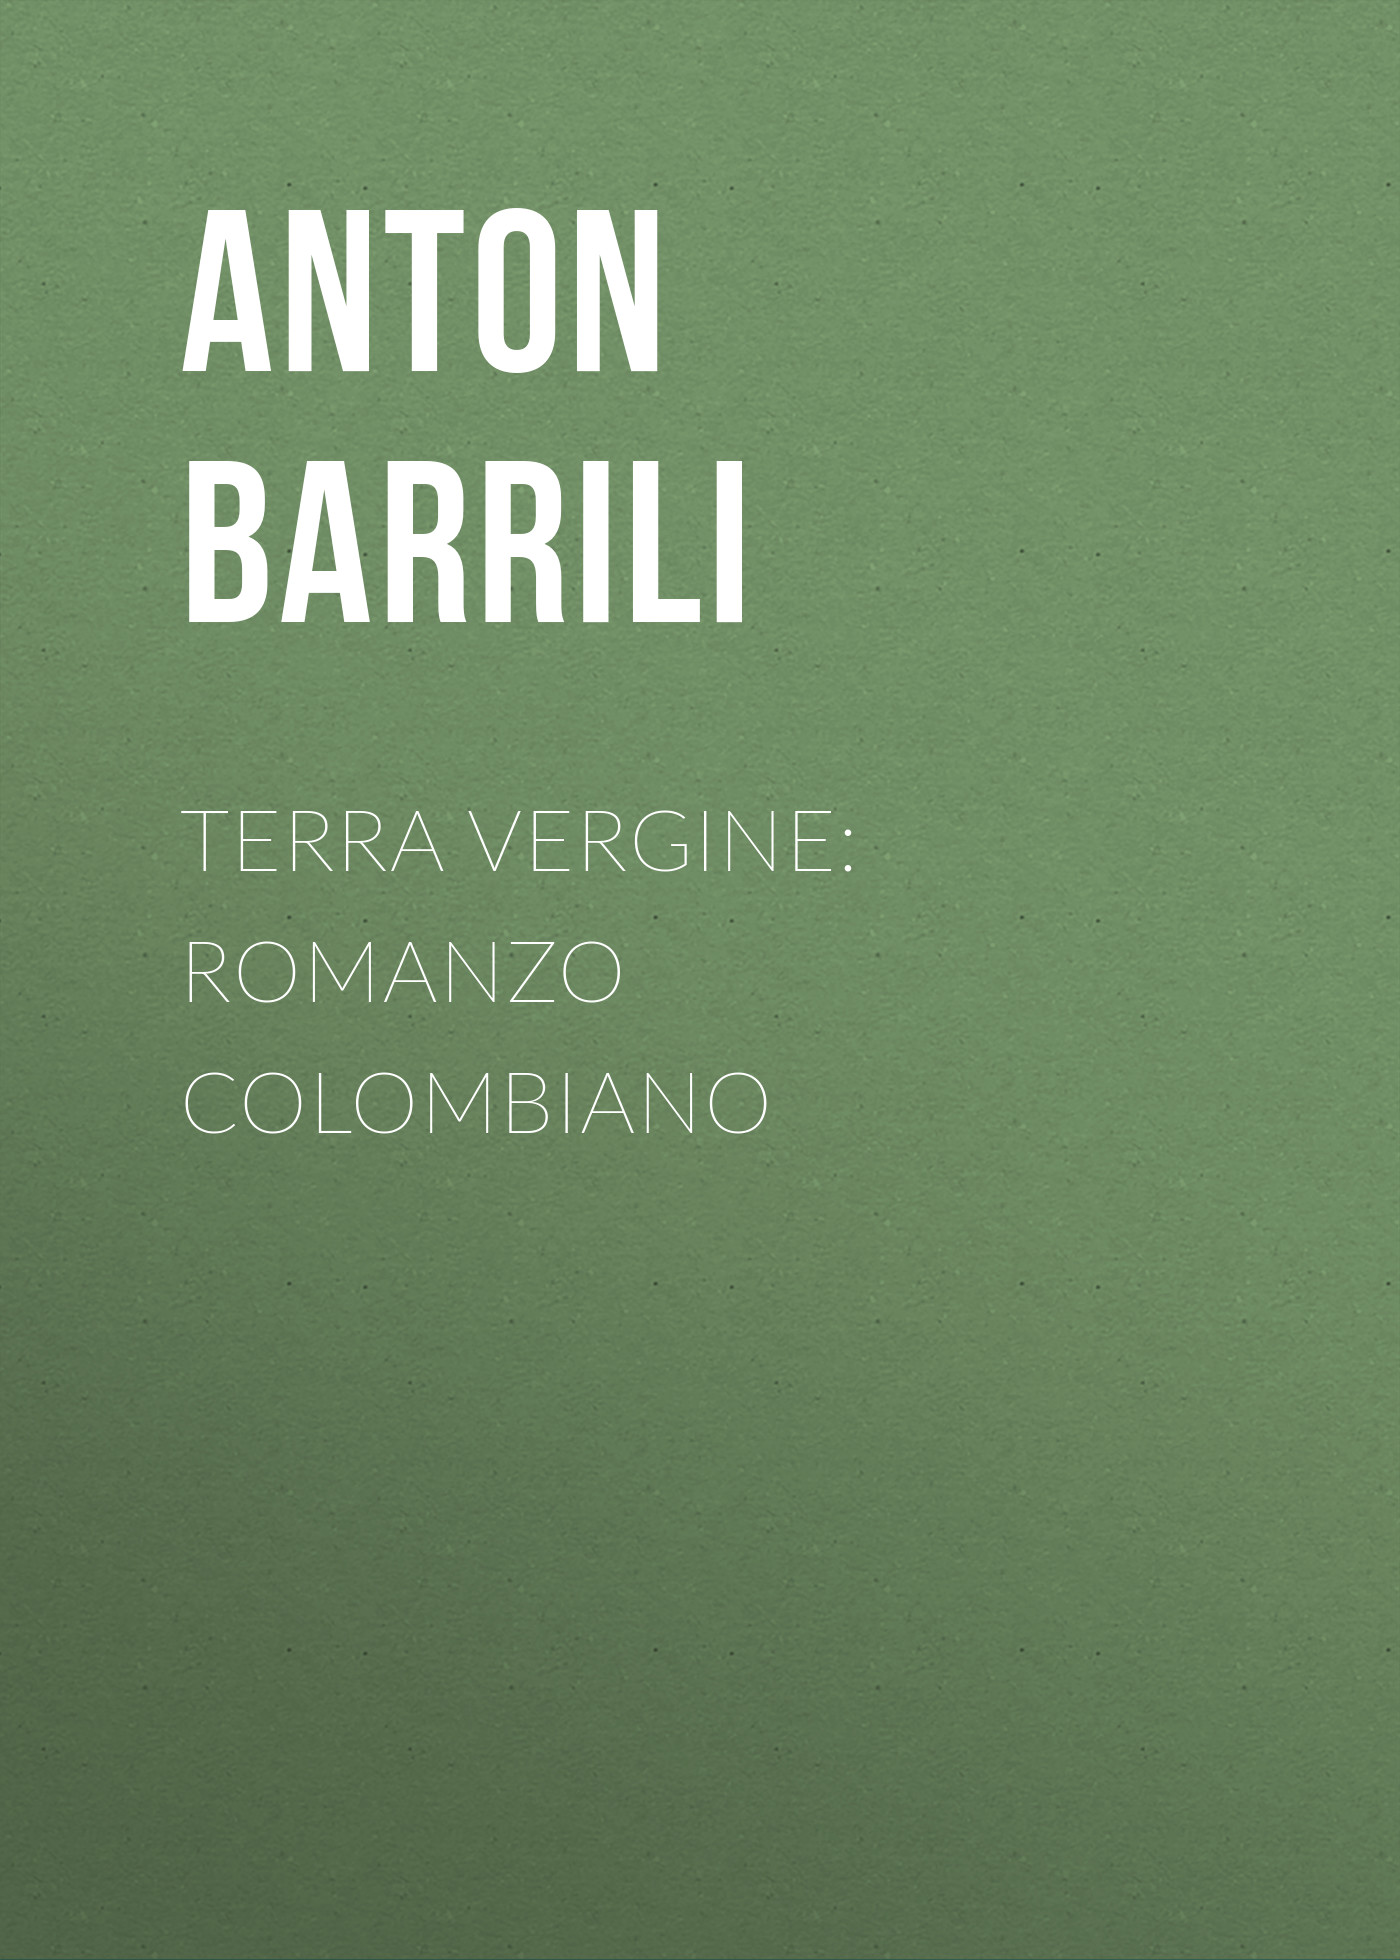 Barrili Anton Giulio Terra vergine: romanzo colombiano